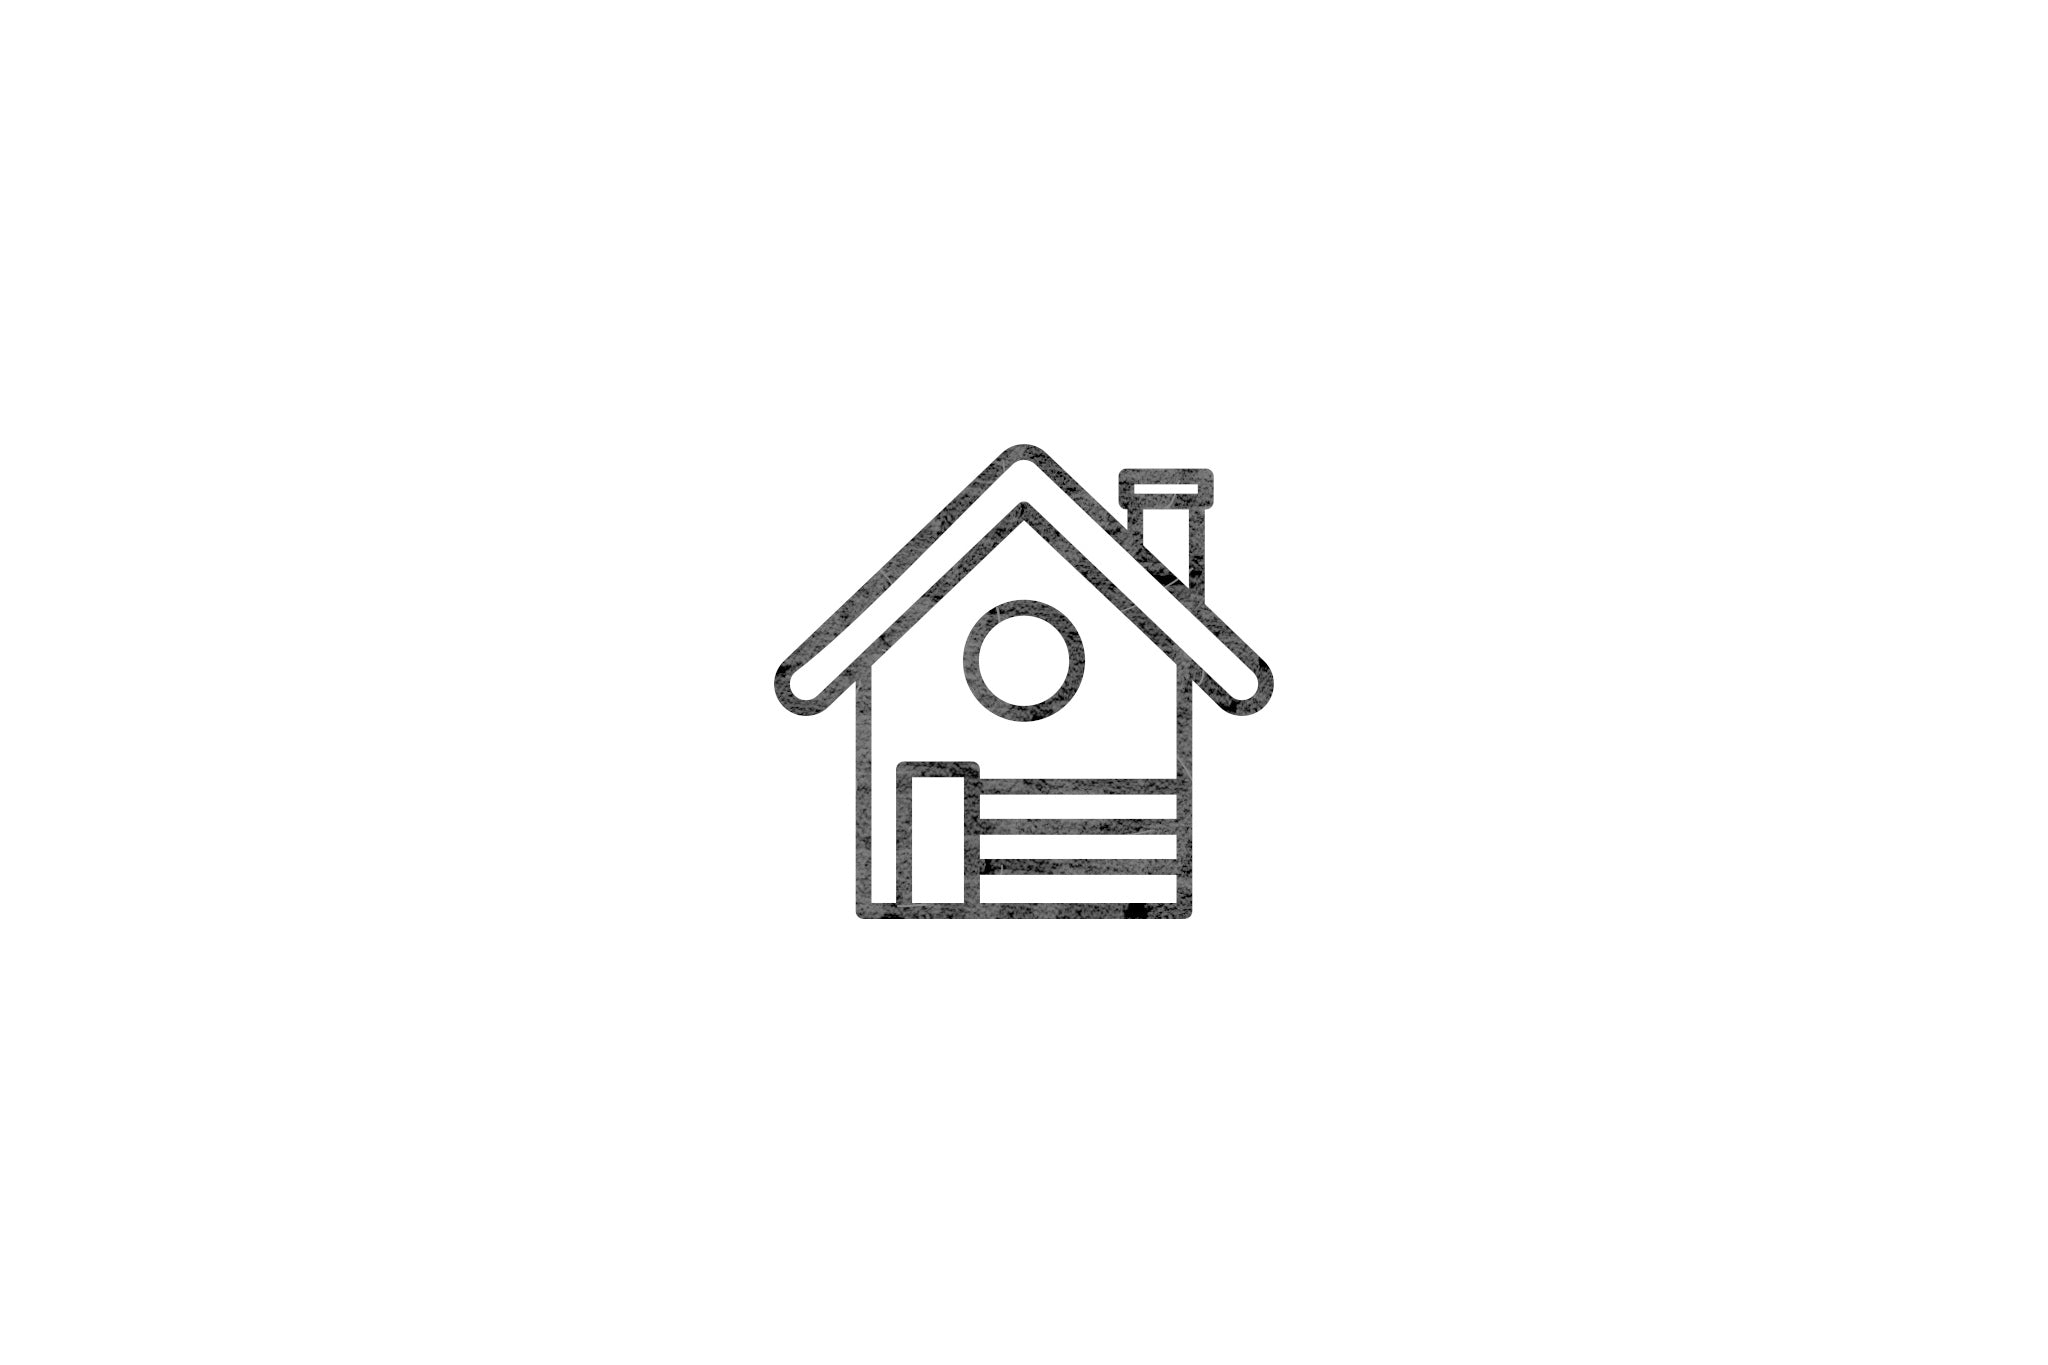 Houten ecologische symbool stempel met symbool van een huis